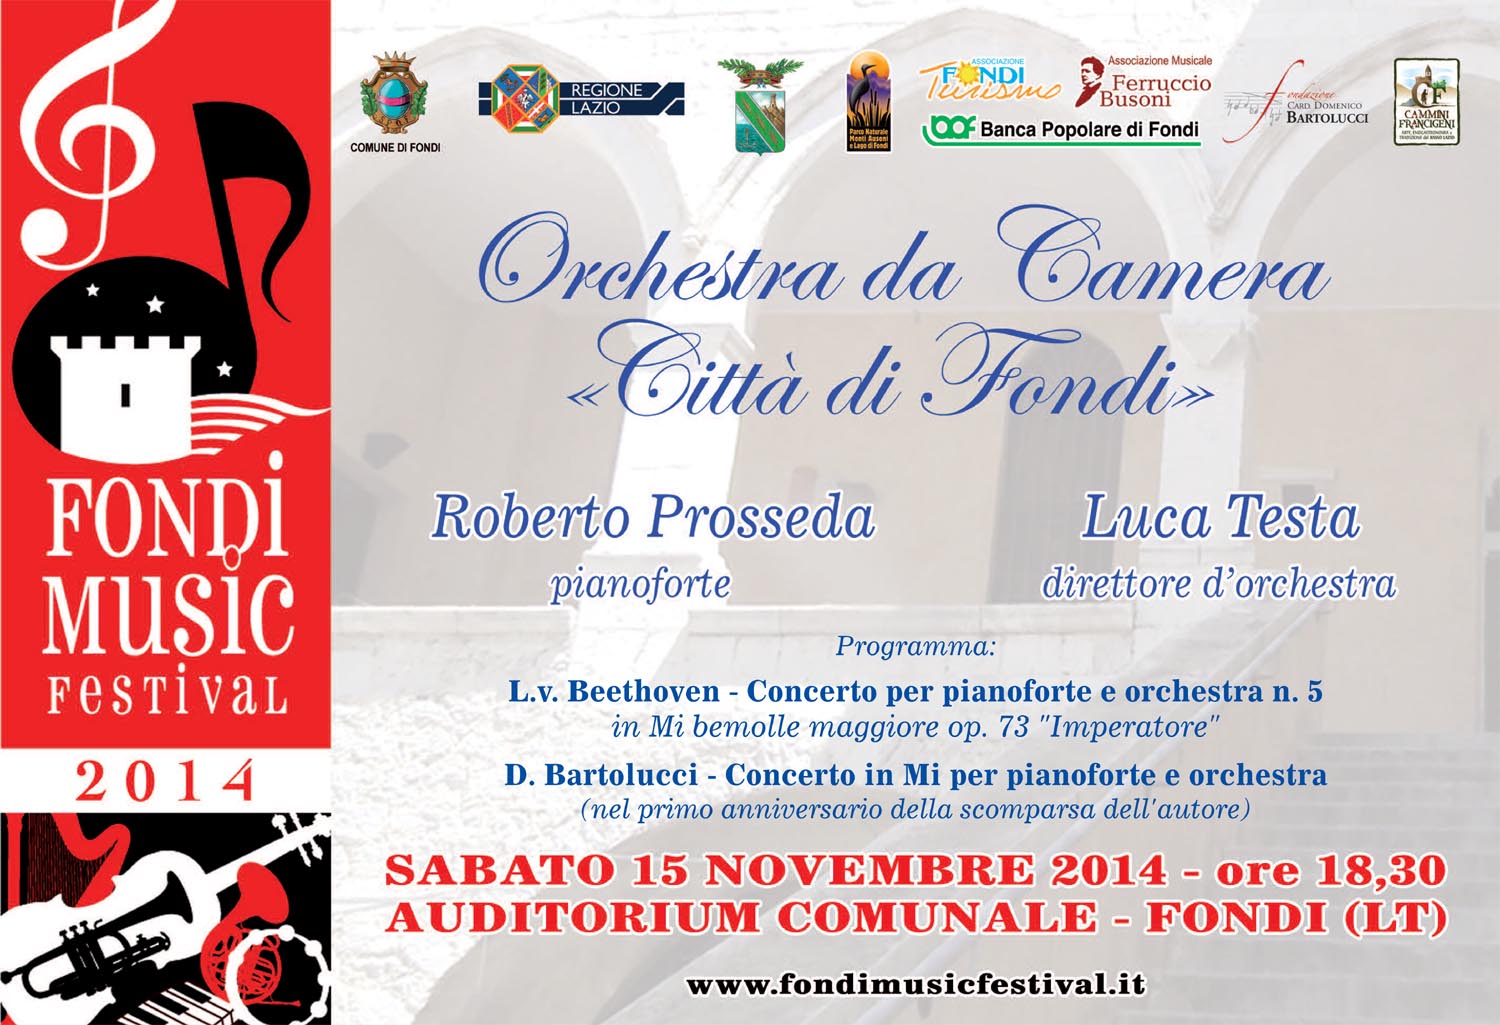 Concerto dell’Orchestra da Camera “Città di Fondi” con direttore d’orchestra Luca Testa e pianista Roberto Prosseda